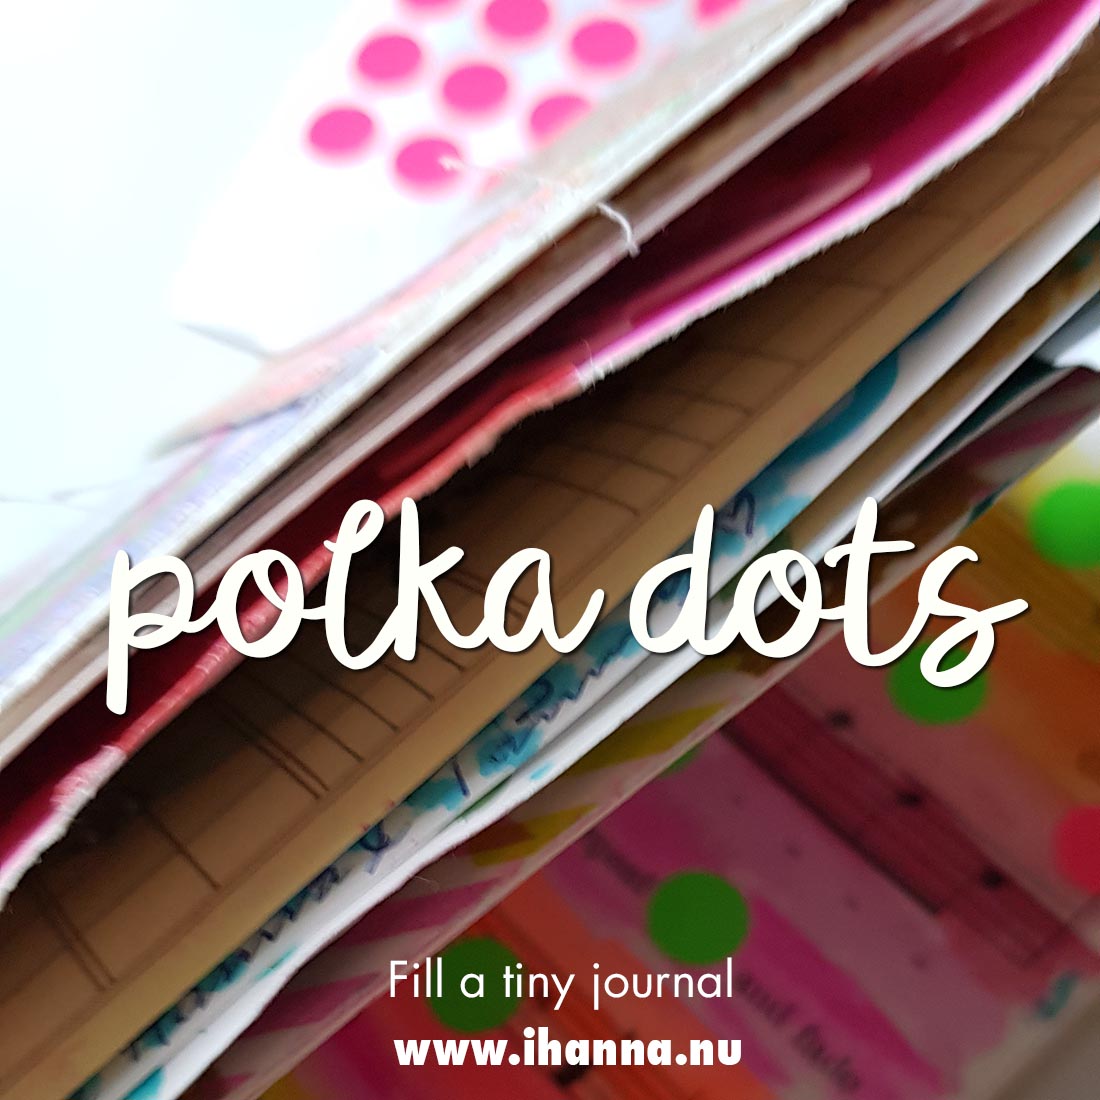 Fill a tiny journal last prompt: Polka Dots